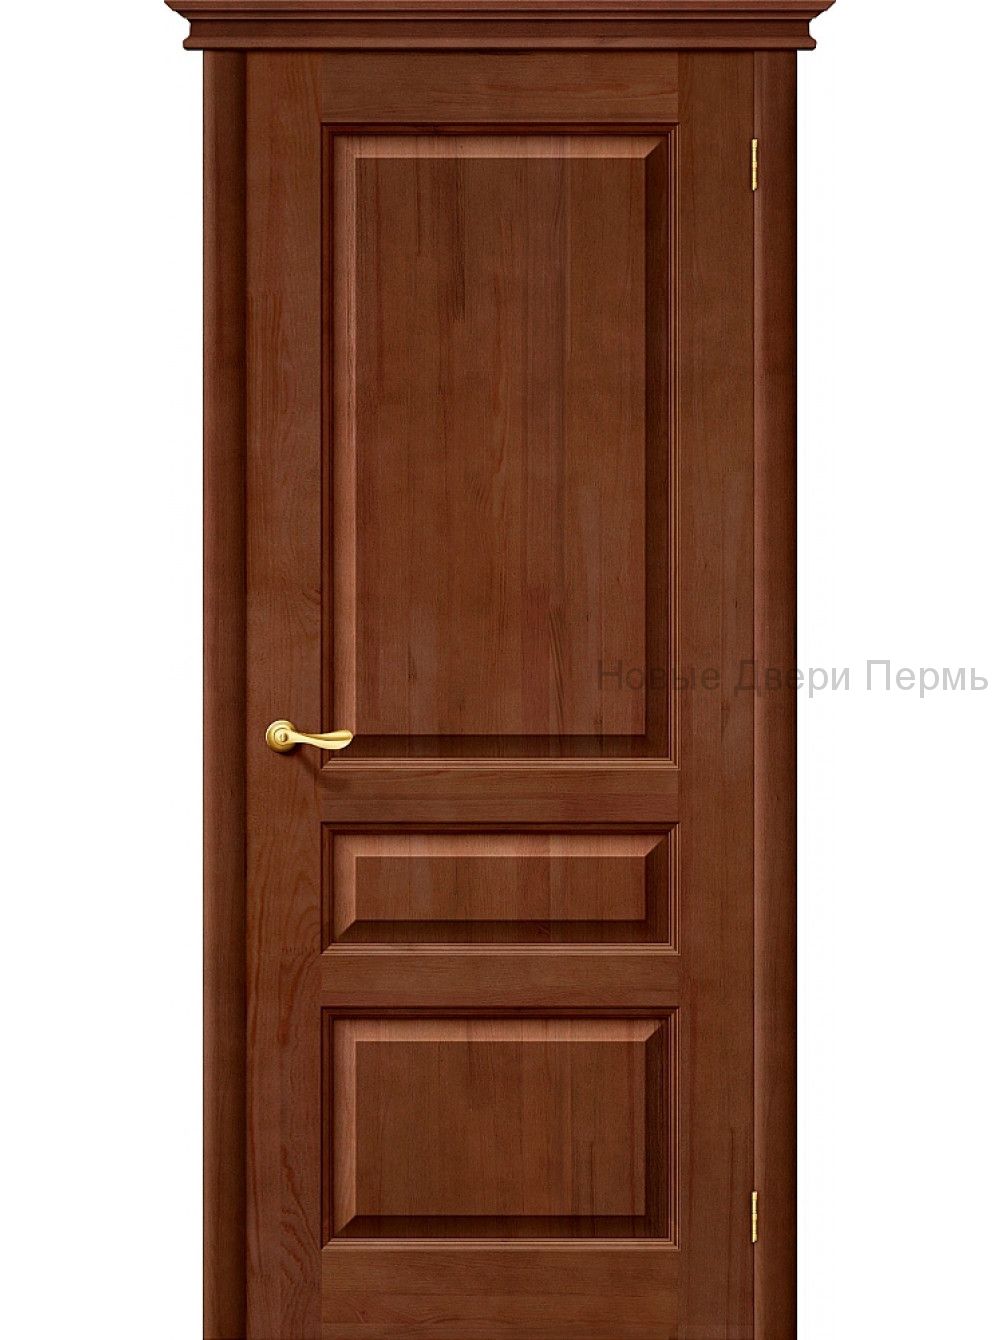 Распашные межкомнатные двери